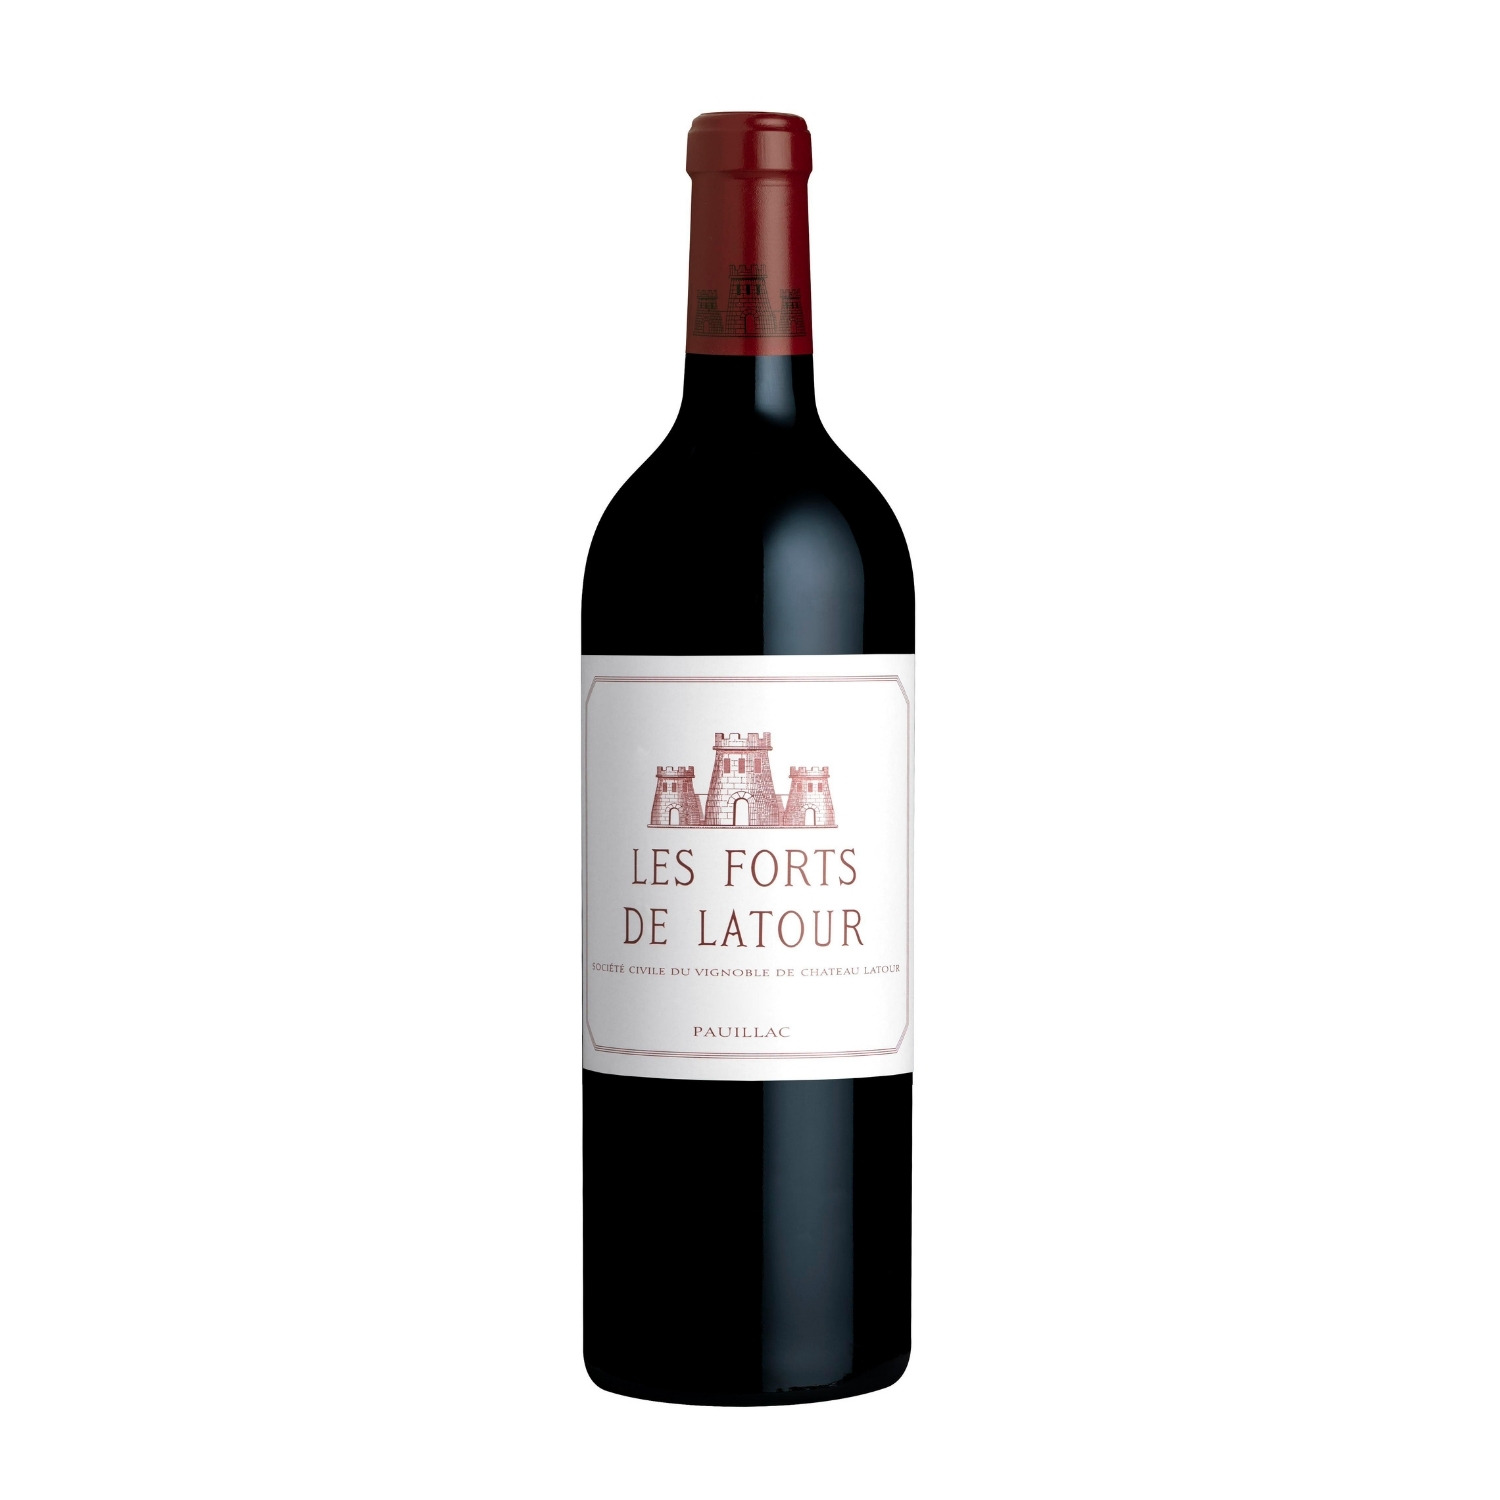 Les Forts de Latour 2011, Pauillac 2nd wine Ch. Latour